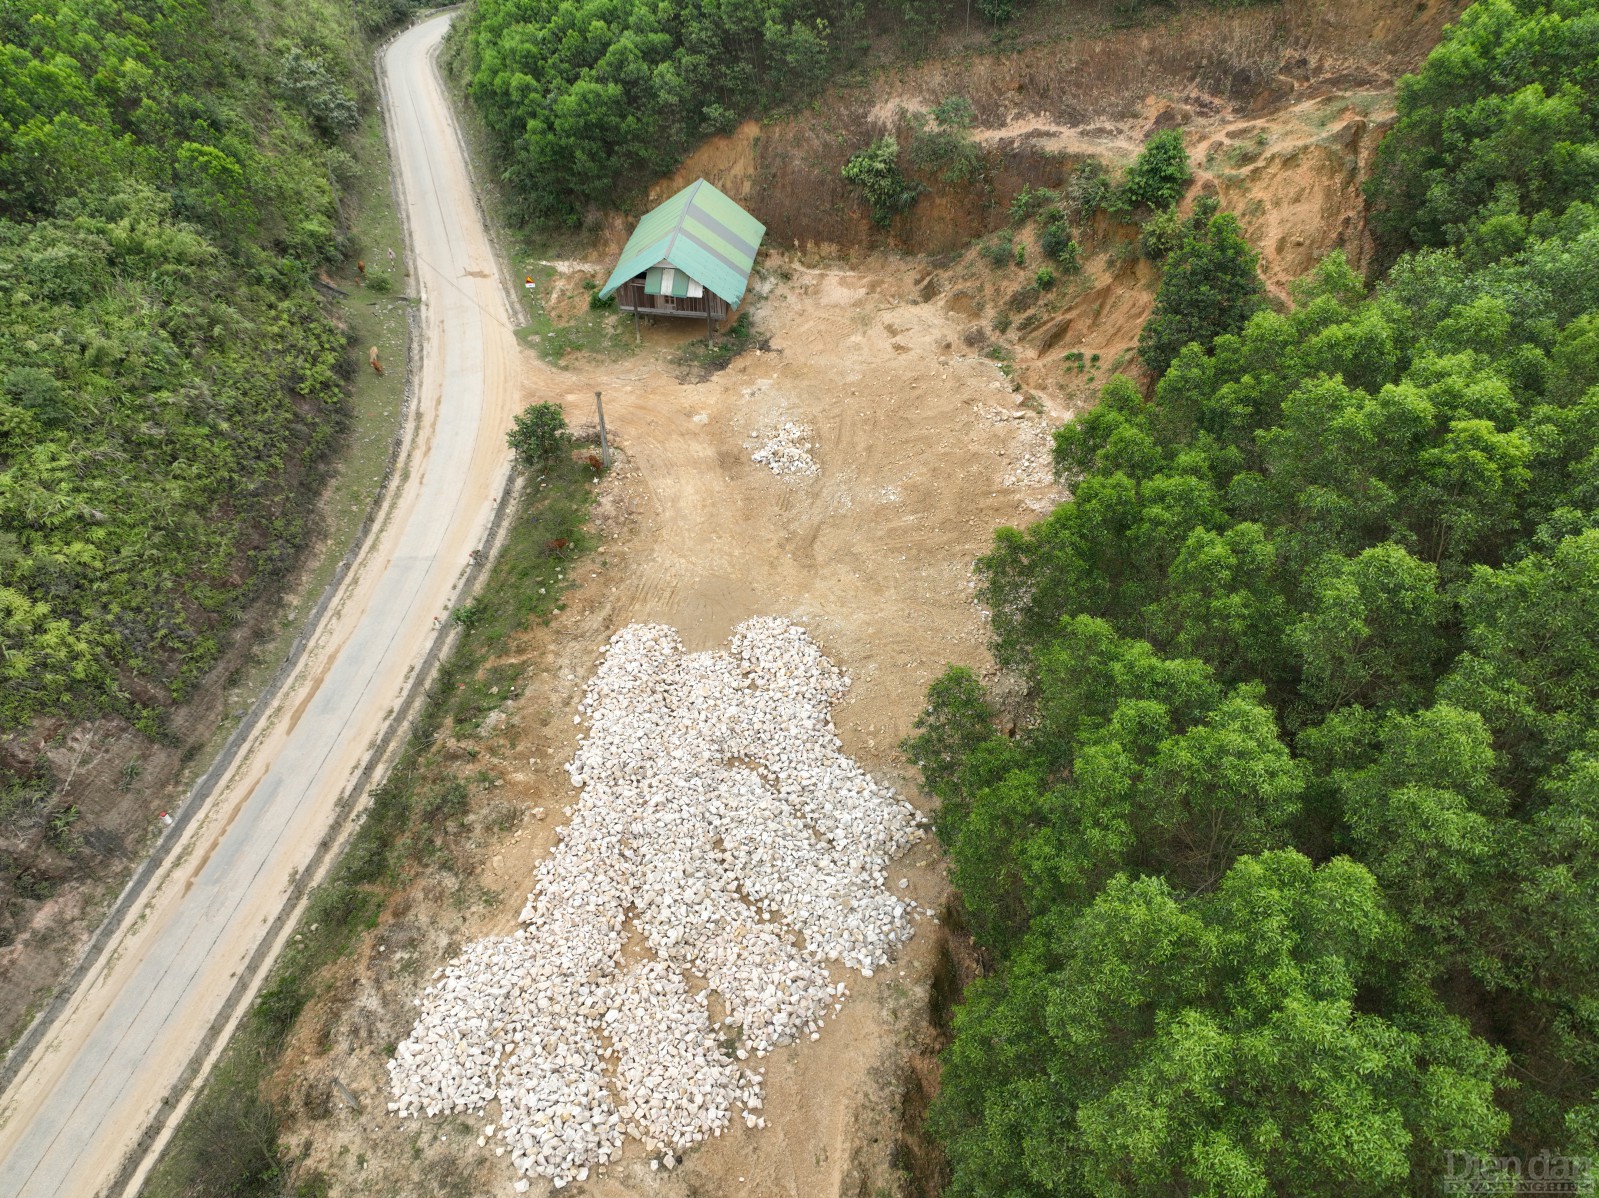 Nhóm người lạ còn ngang nhiên vào khu vực bản Sai, xã Quang Phong, nơi Công ty CP Sơn Nam đang hoàn thiện thủ tục thăm dò để khai thác, tập kết đá thạch anh